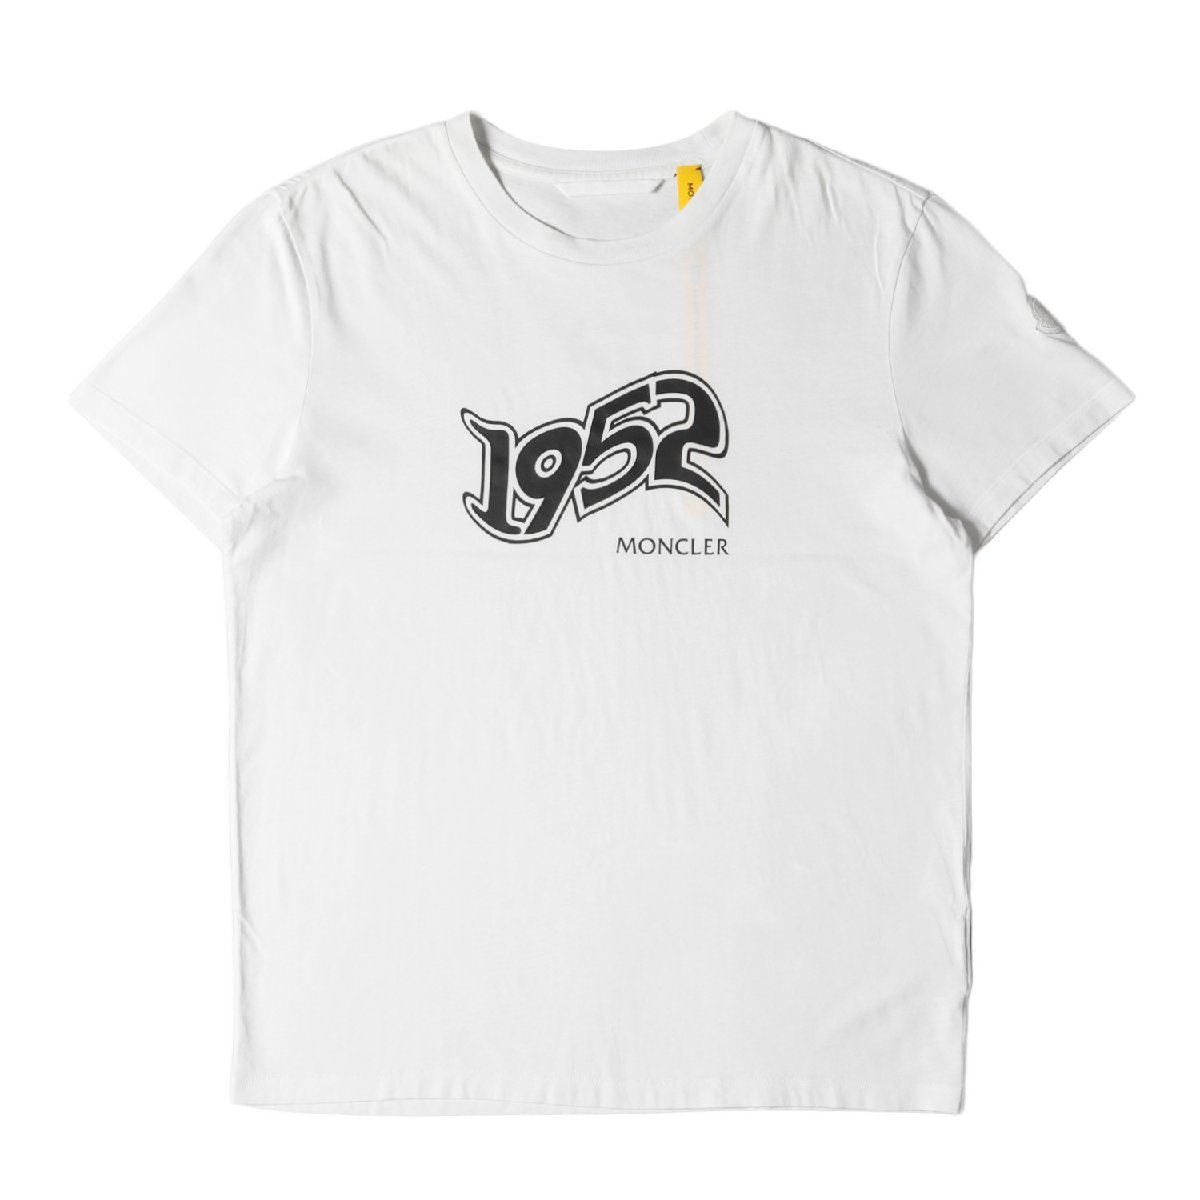 MONCLER モンクレール Tシャツ サイズ:L 1952 ロゴ グラフィック 半袖 MAGLIA T-SHIRT G10928C73110 829FB 21SS ホワイト 白 トップス